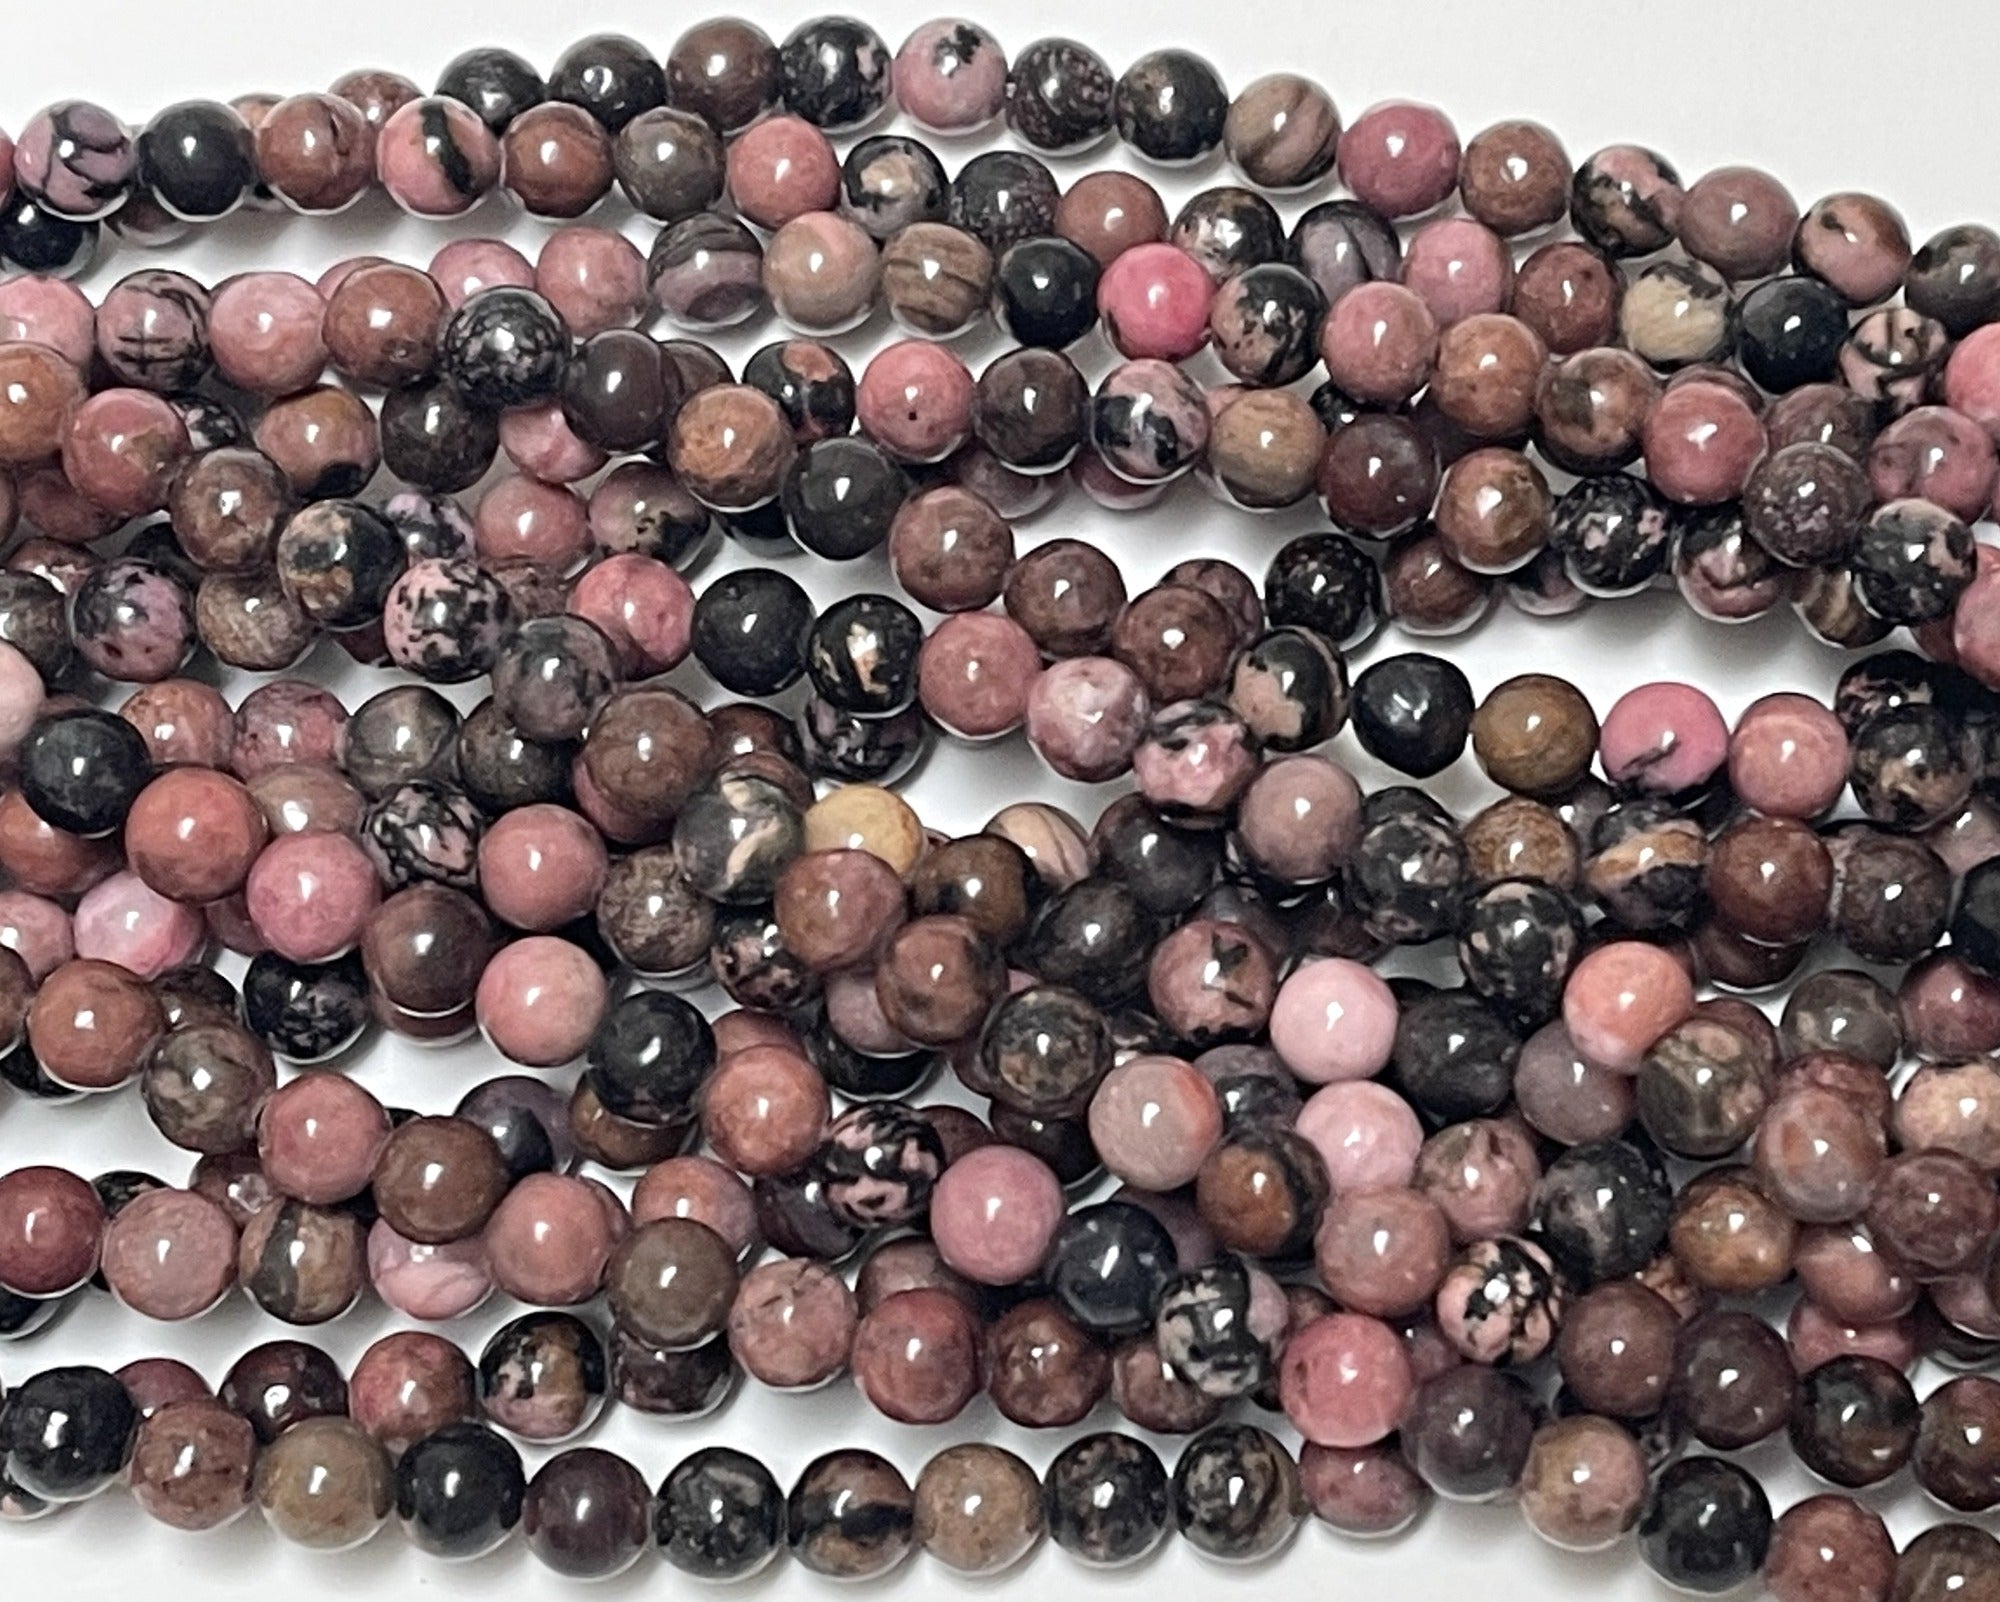 Black Veined Rhodonite 6mm round ball beads 15" strand